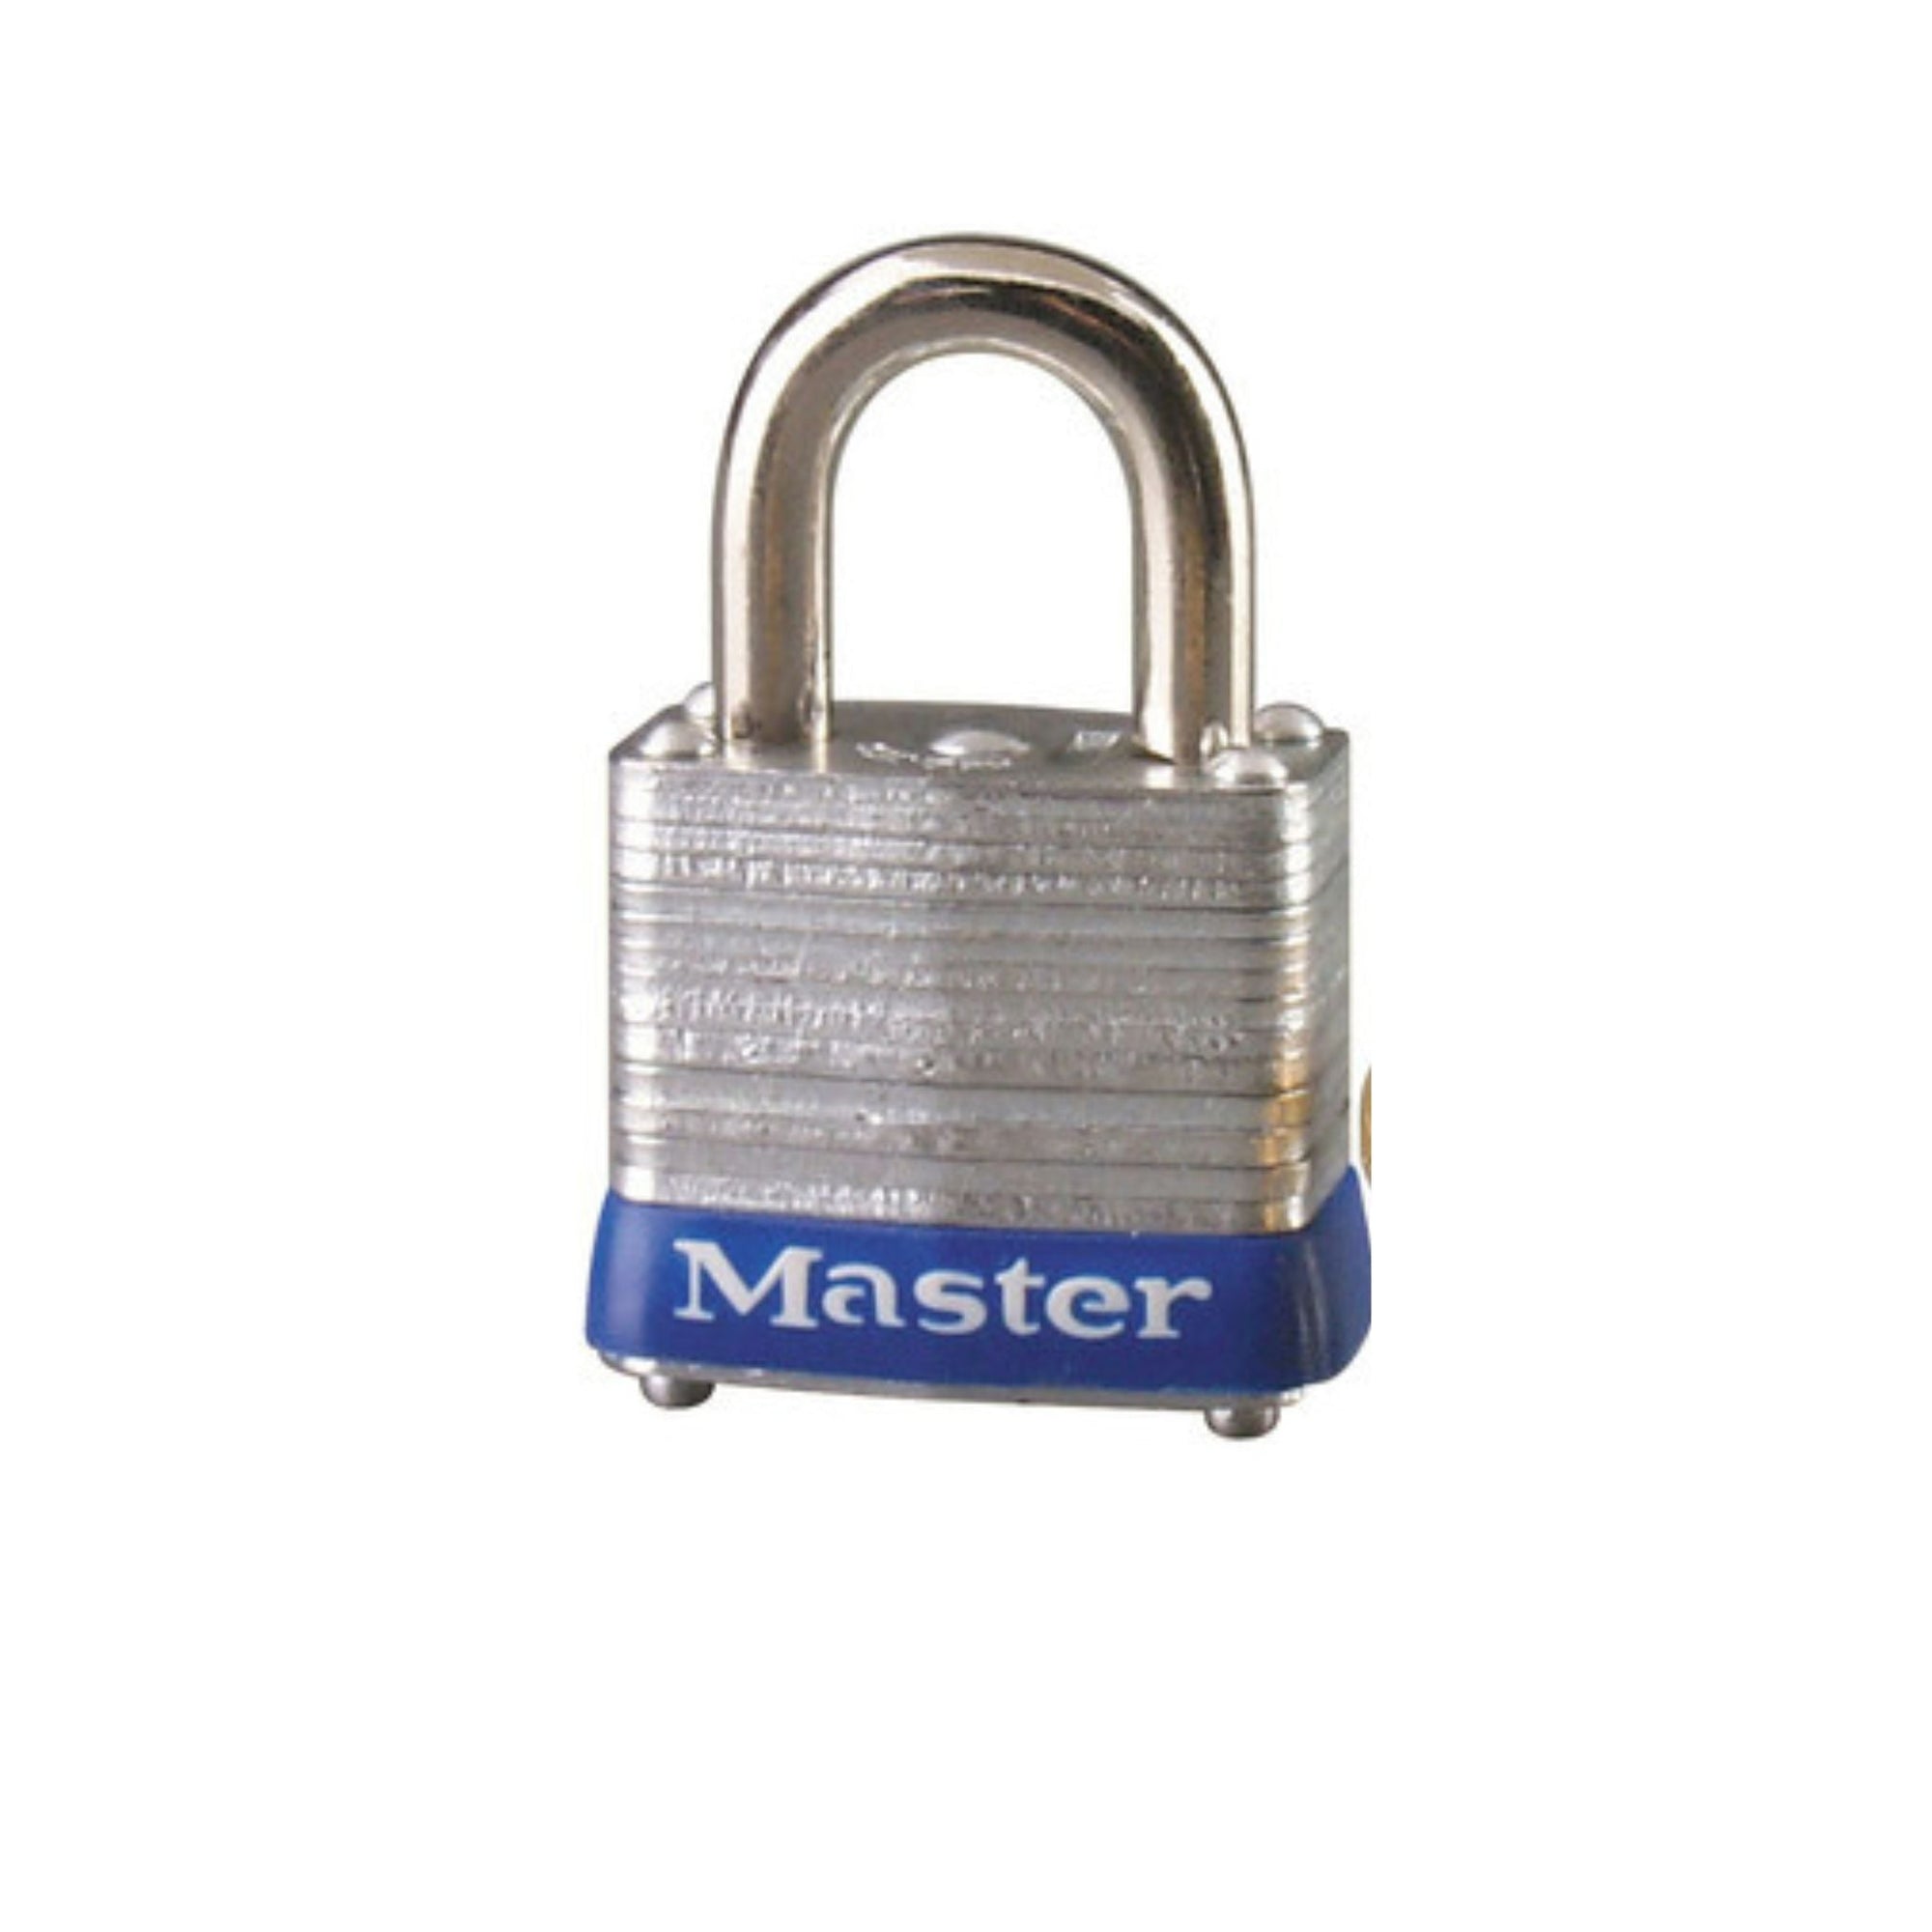 Master Lock 7KA P124 Lock Laminated steel No. 7 Series Padlock Keyed to Match Existing Key Number KAP124 - The Lock Source